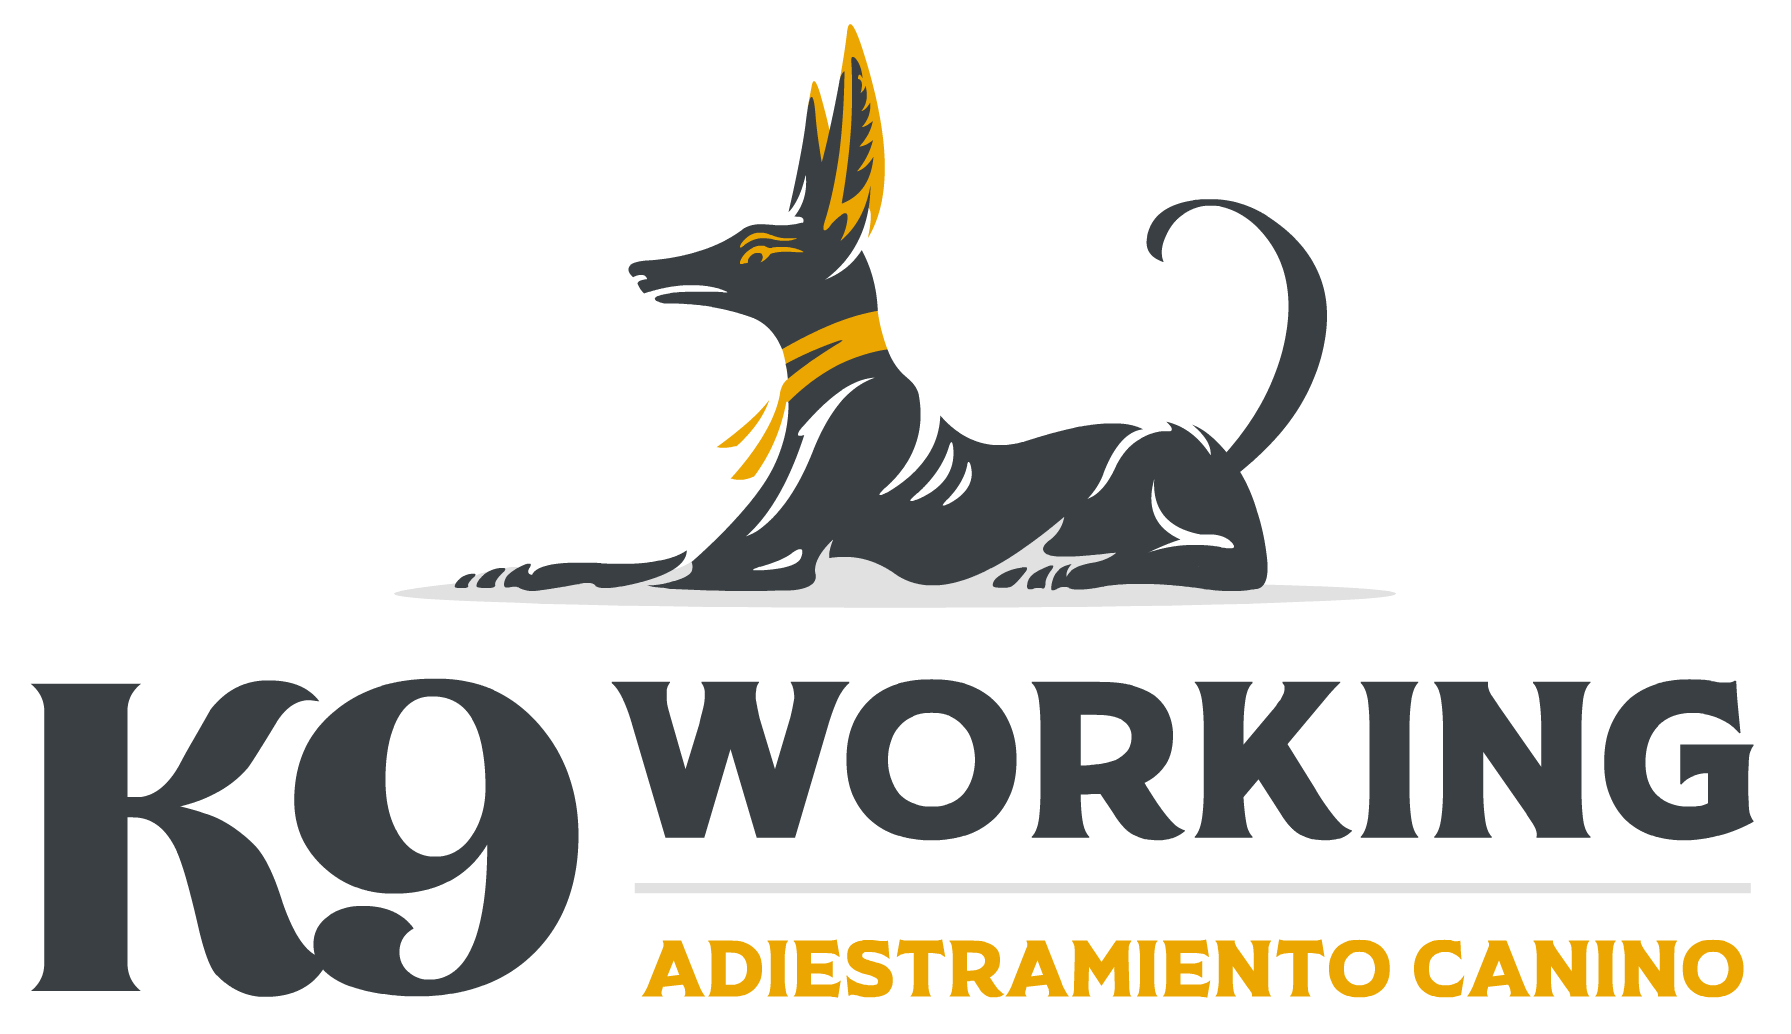 K9 Working Adiestramiento canino